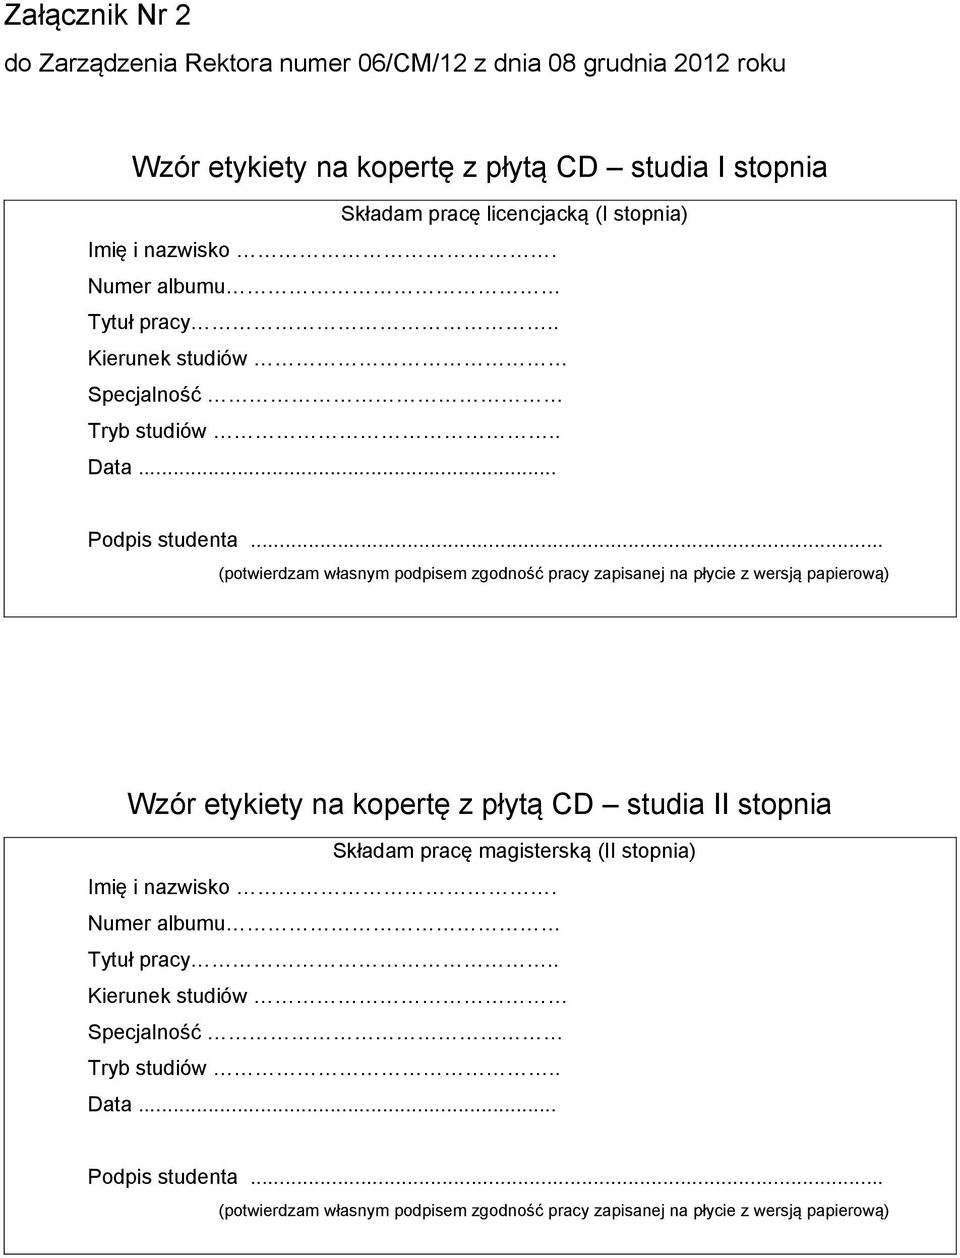 .. (potwierdzam własnym podpisem zgodność pracy zapisanej na płycie z wersją papierową) Wzór etykiety na kopertę z płytą CD studia II stopnia Składam